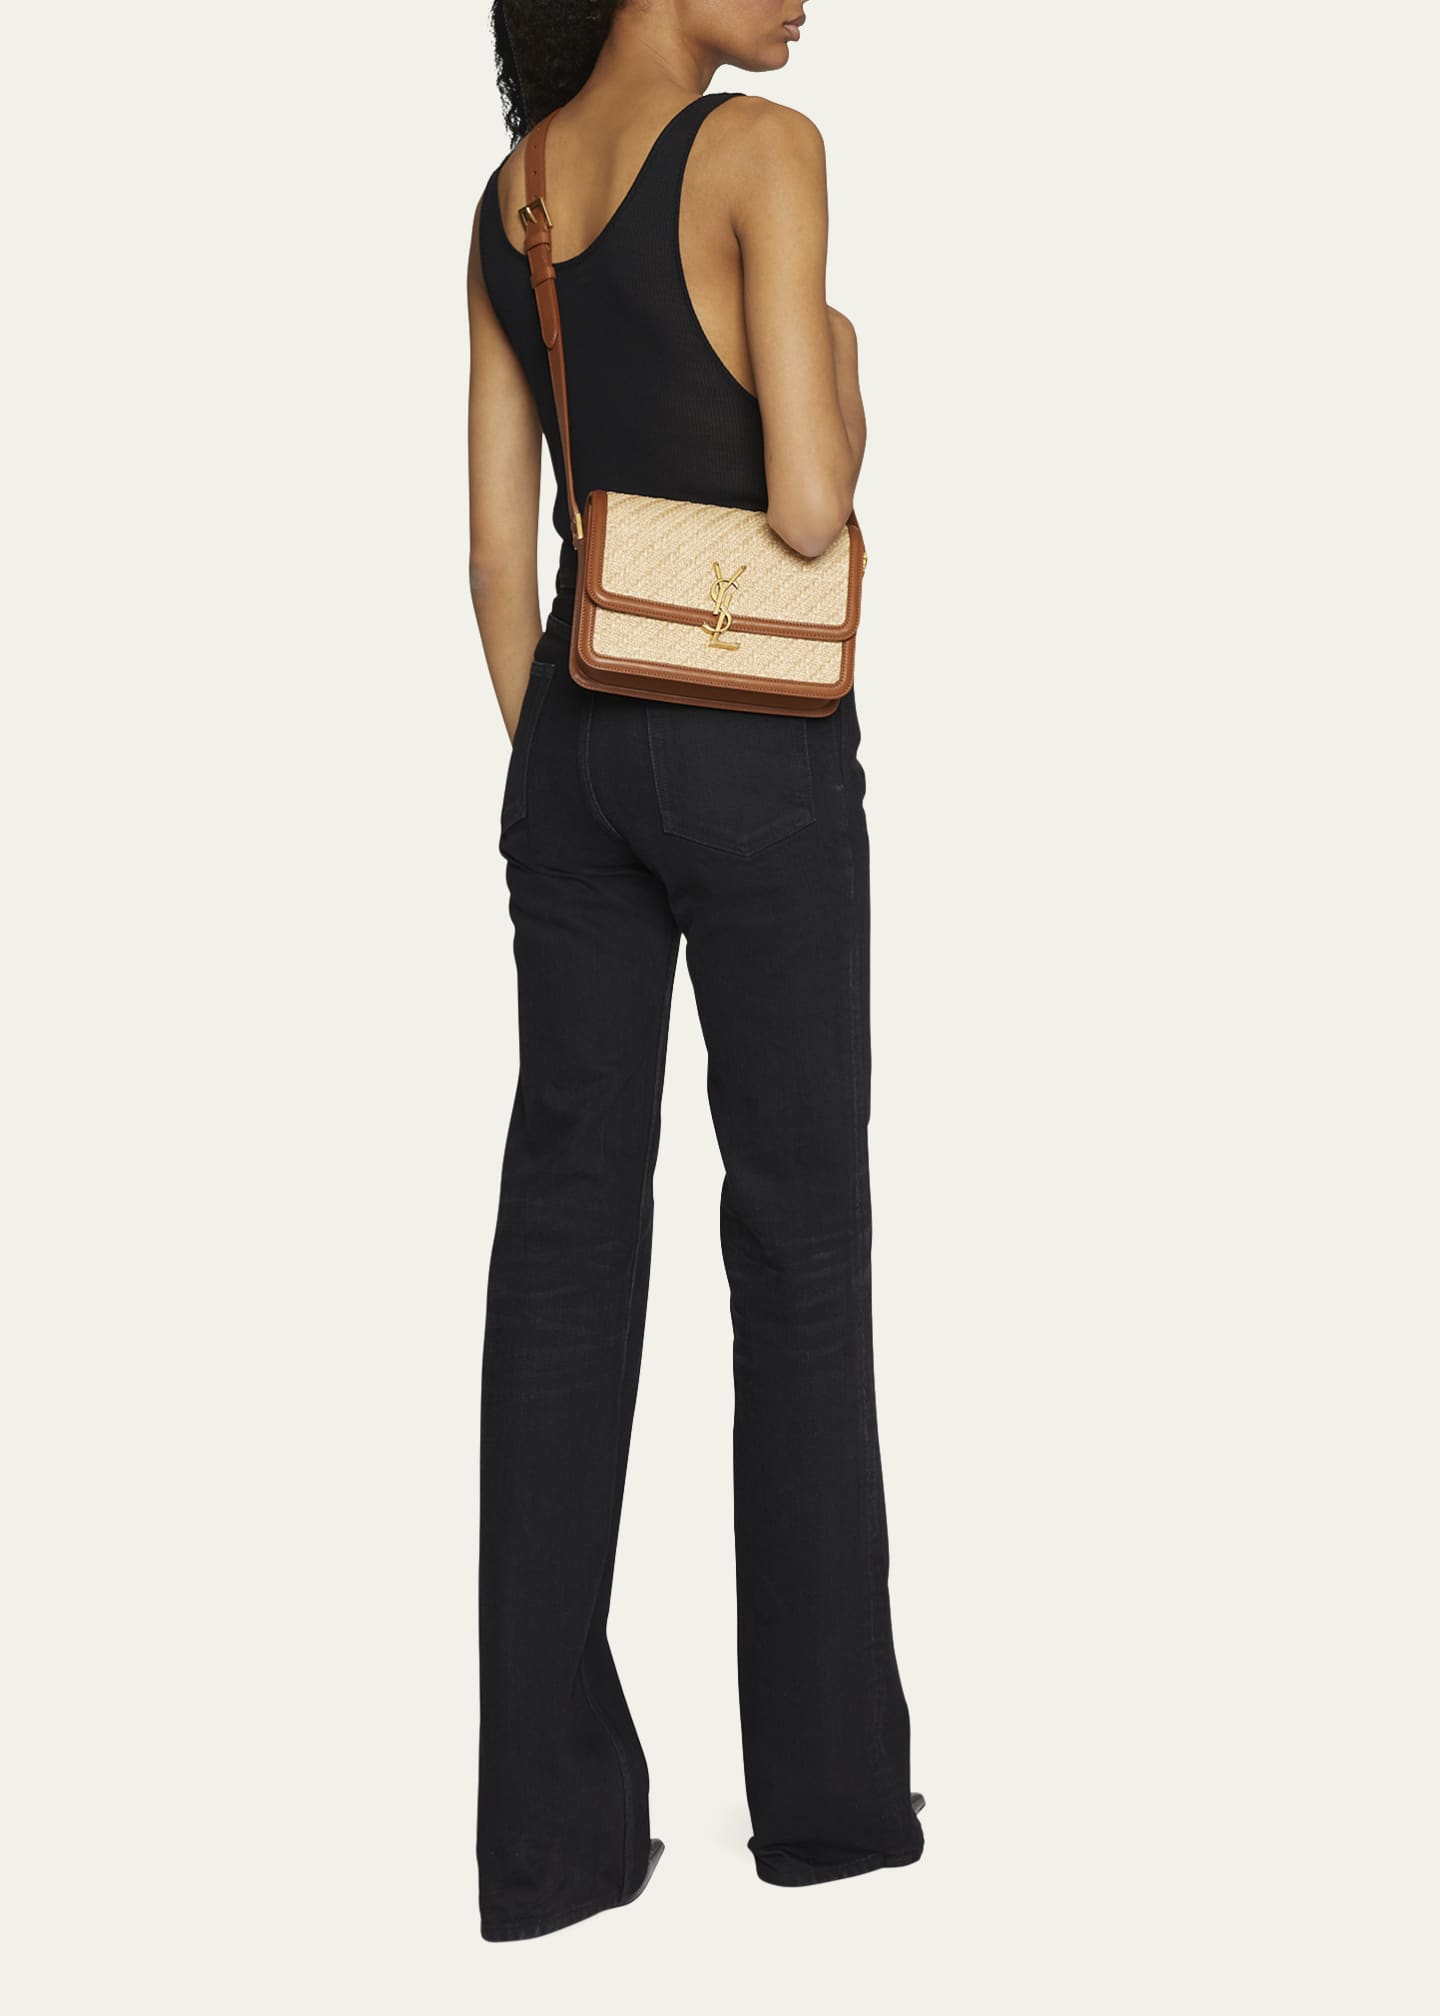 Saint Laurent Medium YSL Flap Raffia Shoulder Bag